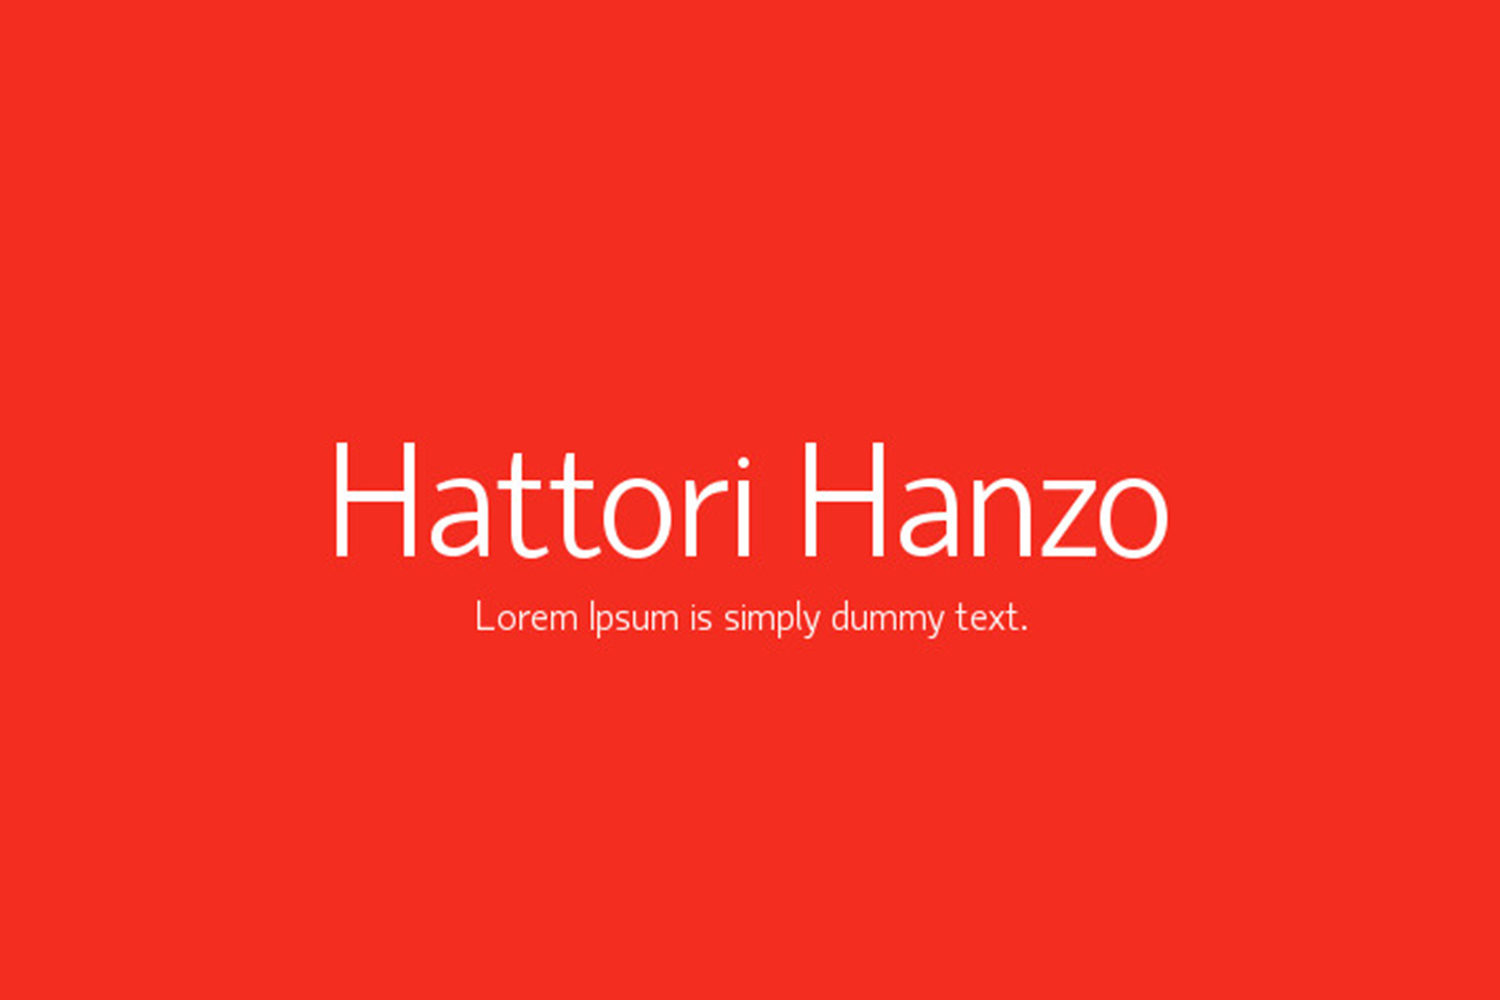 Beispiel einer Hattori Hanzo-Schriftart